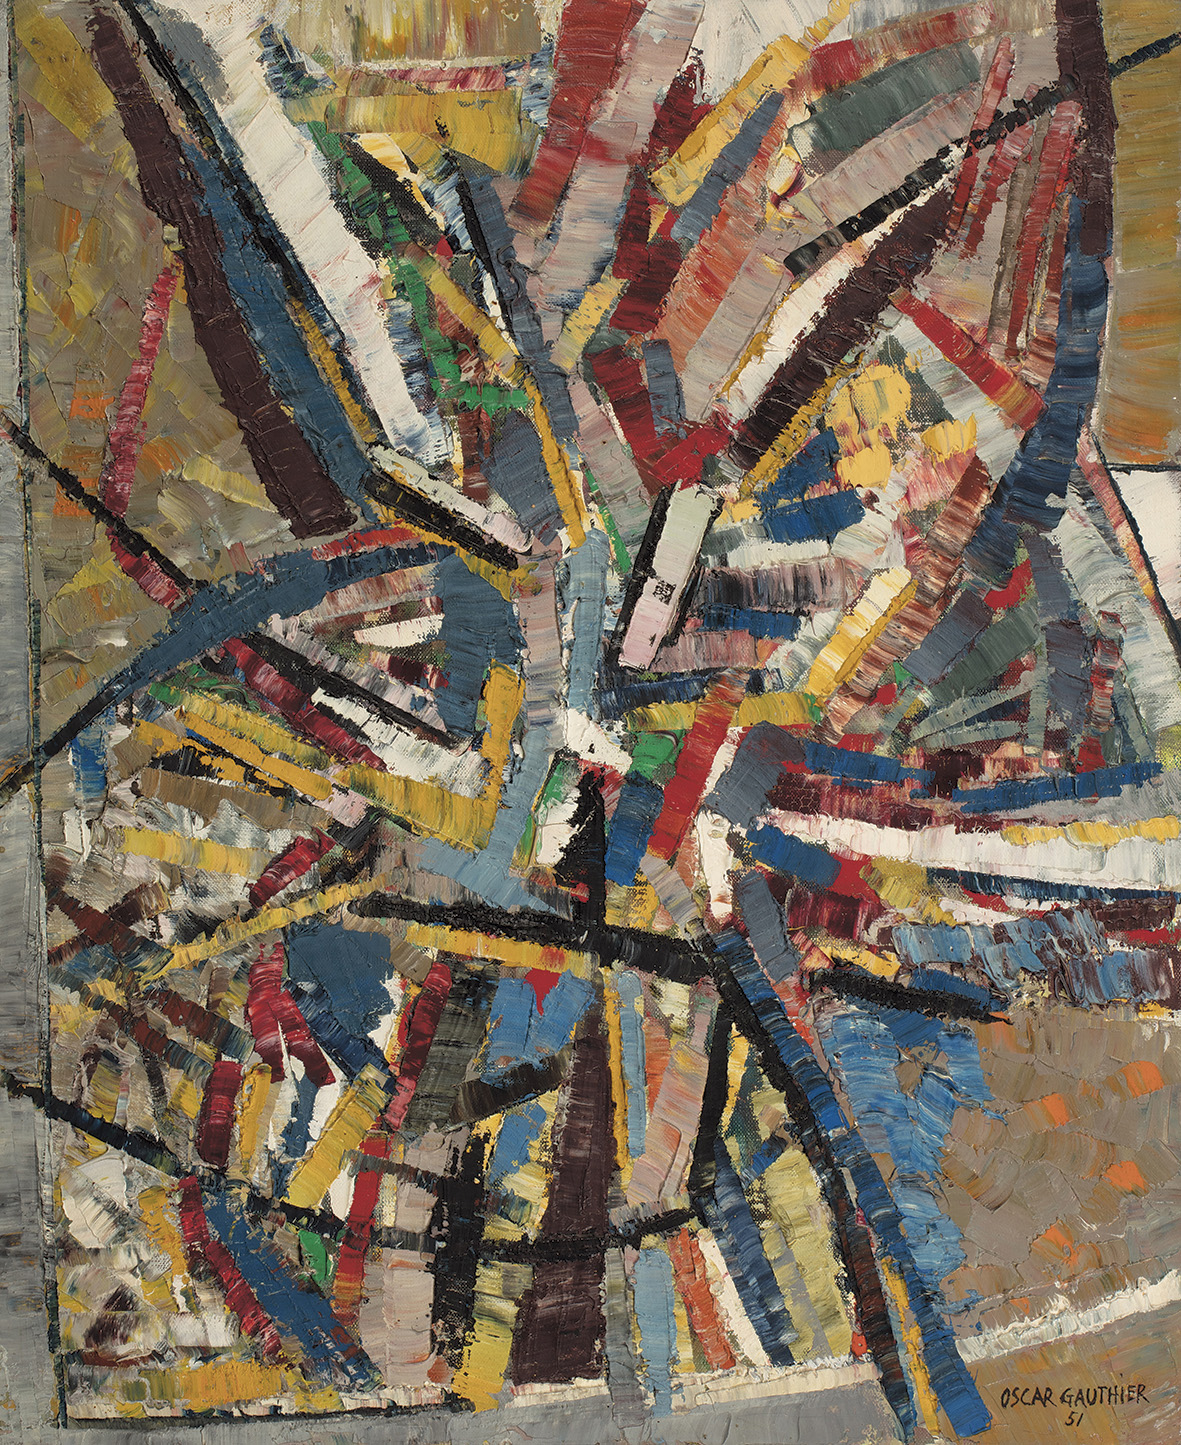 9 363 € saluaient une Composition d’Oscar Gauthier (1921-2009). Cette huile de 1951, mesurant 62 x 50 cm, explose sur la toile à la manièr